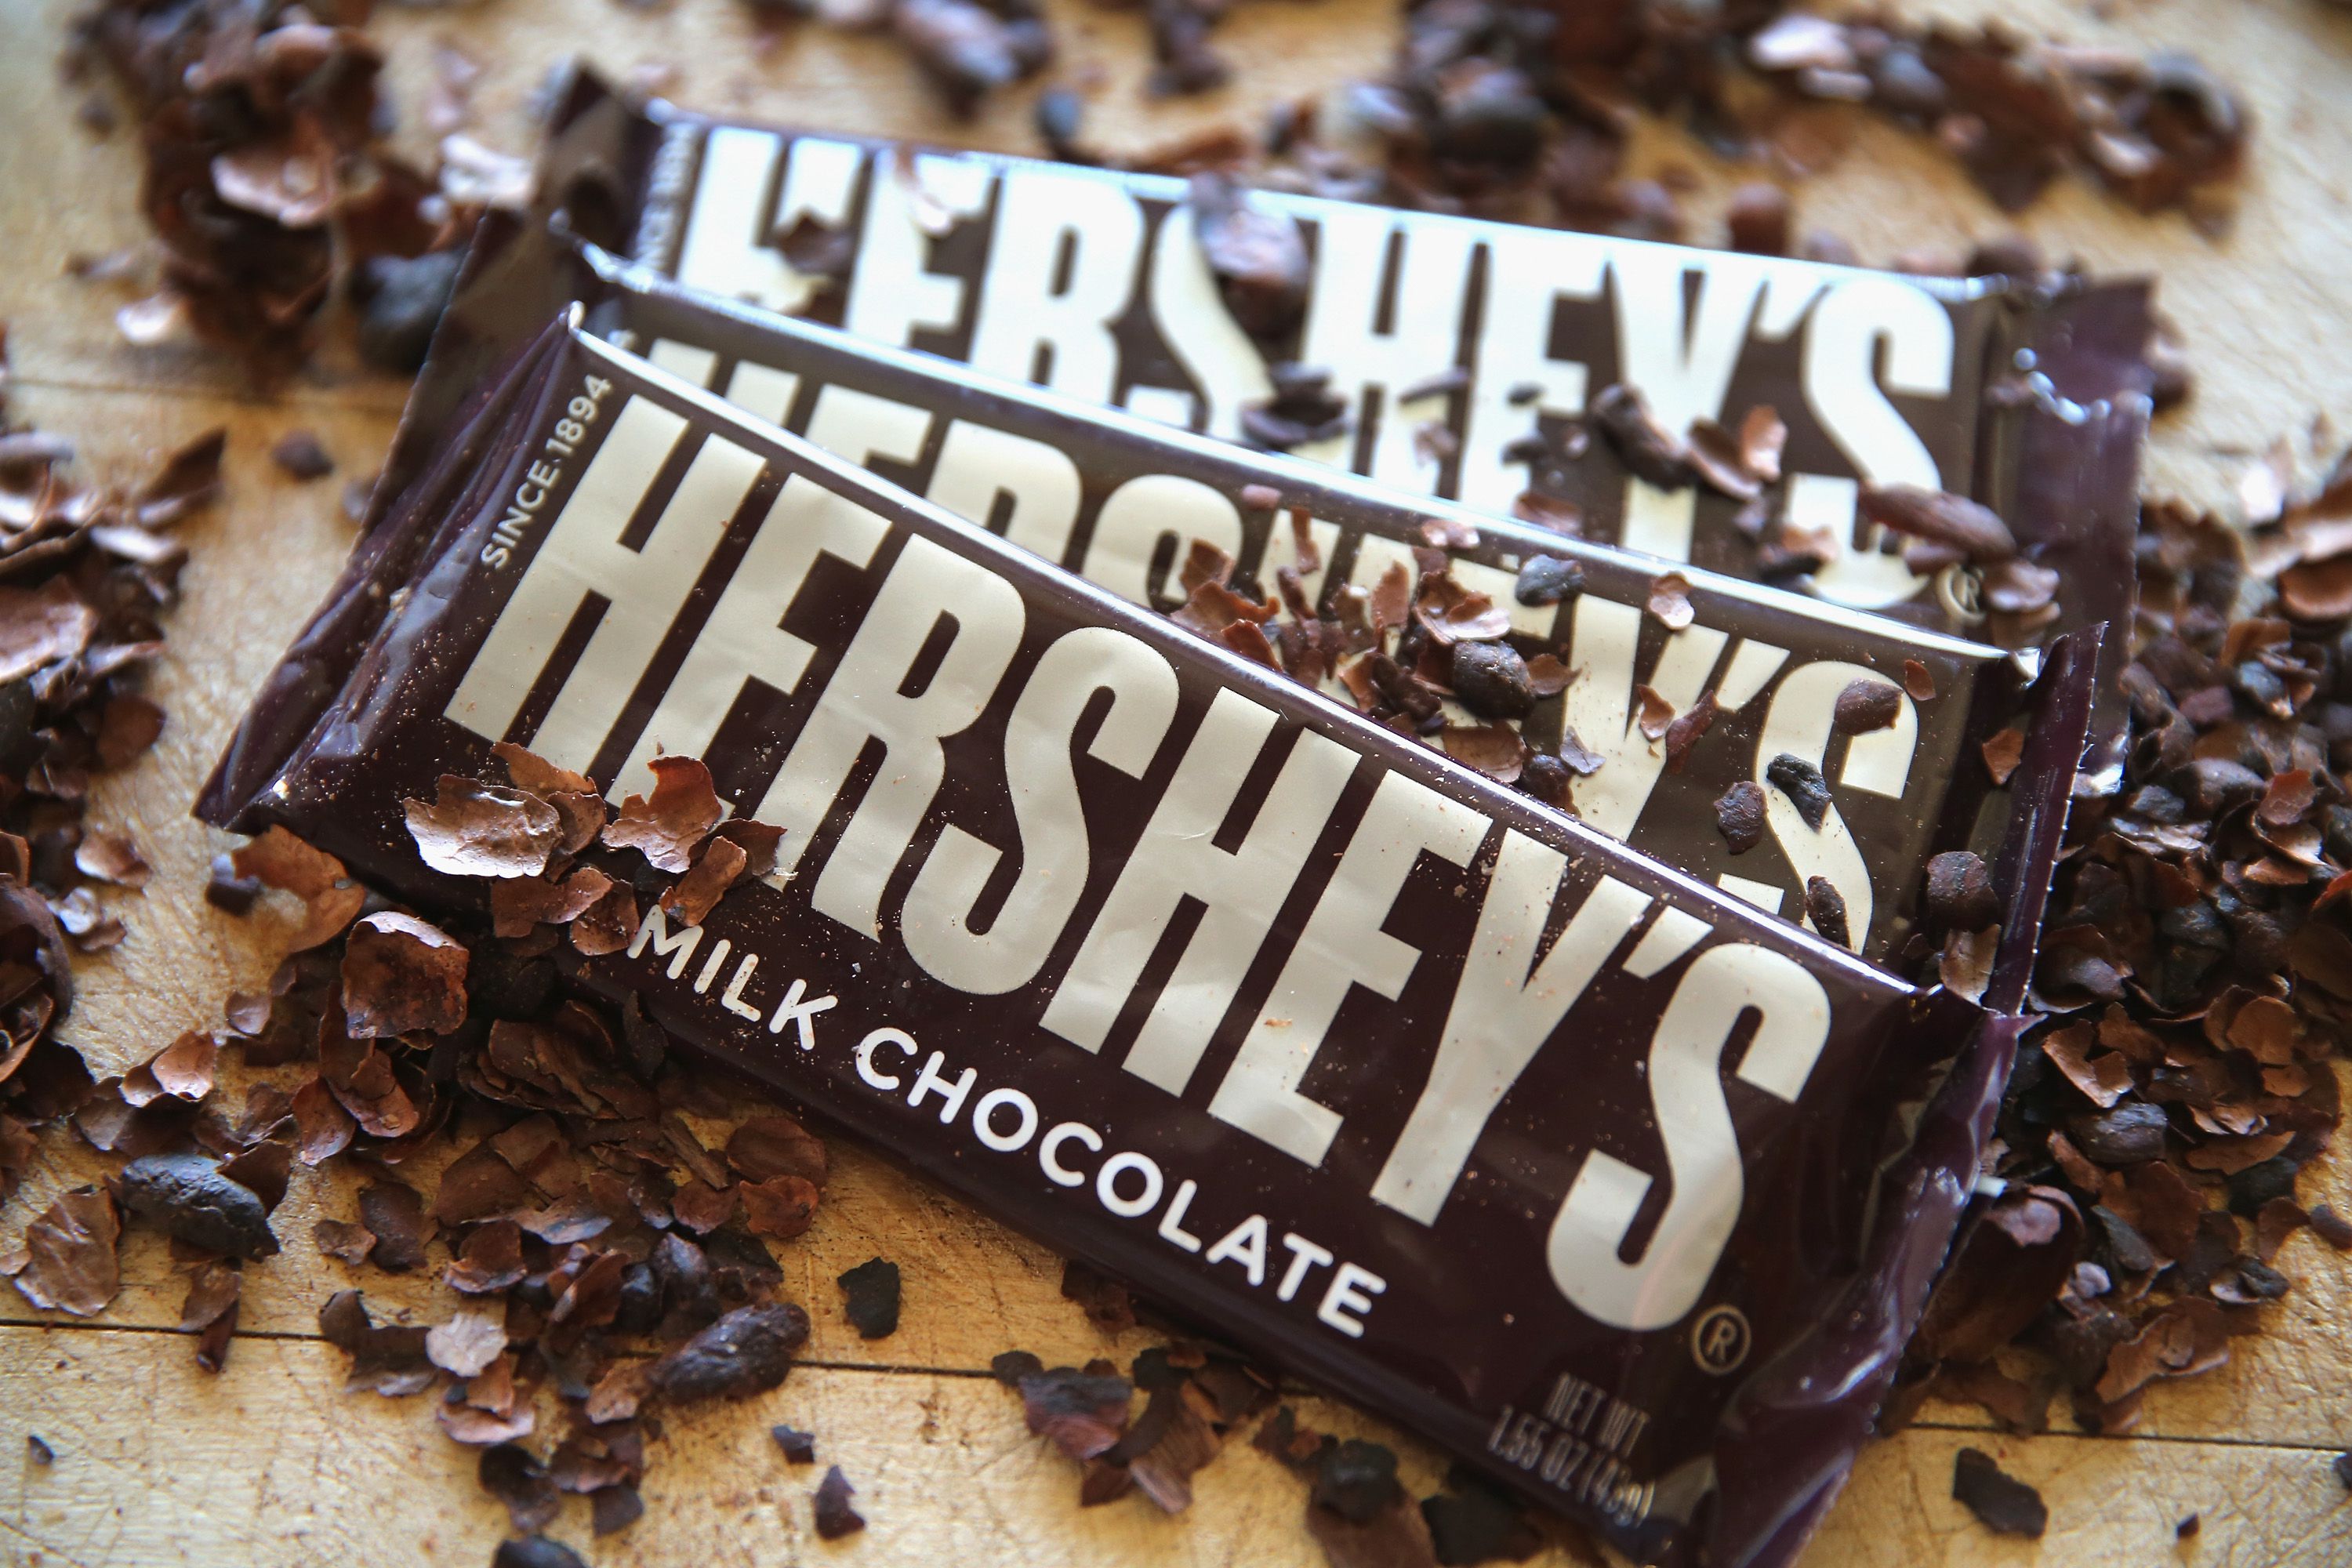 History of Hershey's Chocolate Milton Hershey